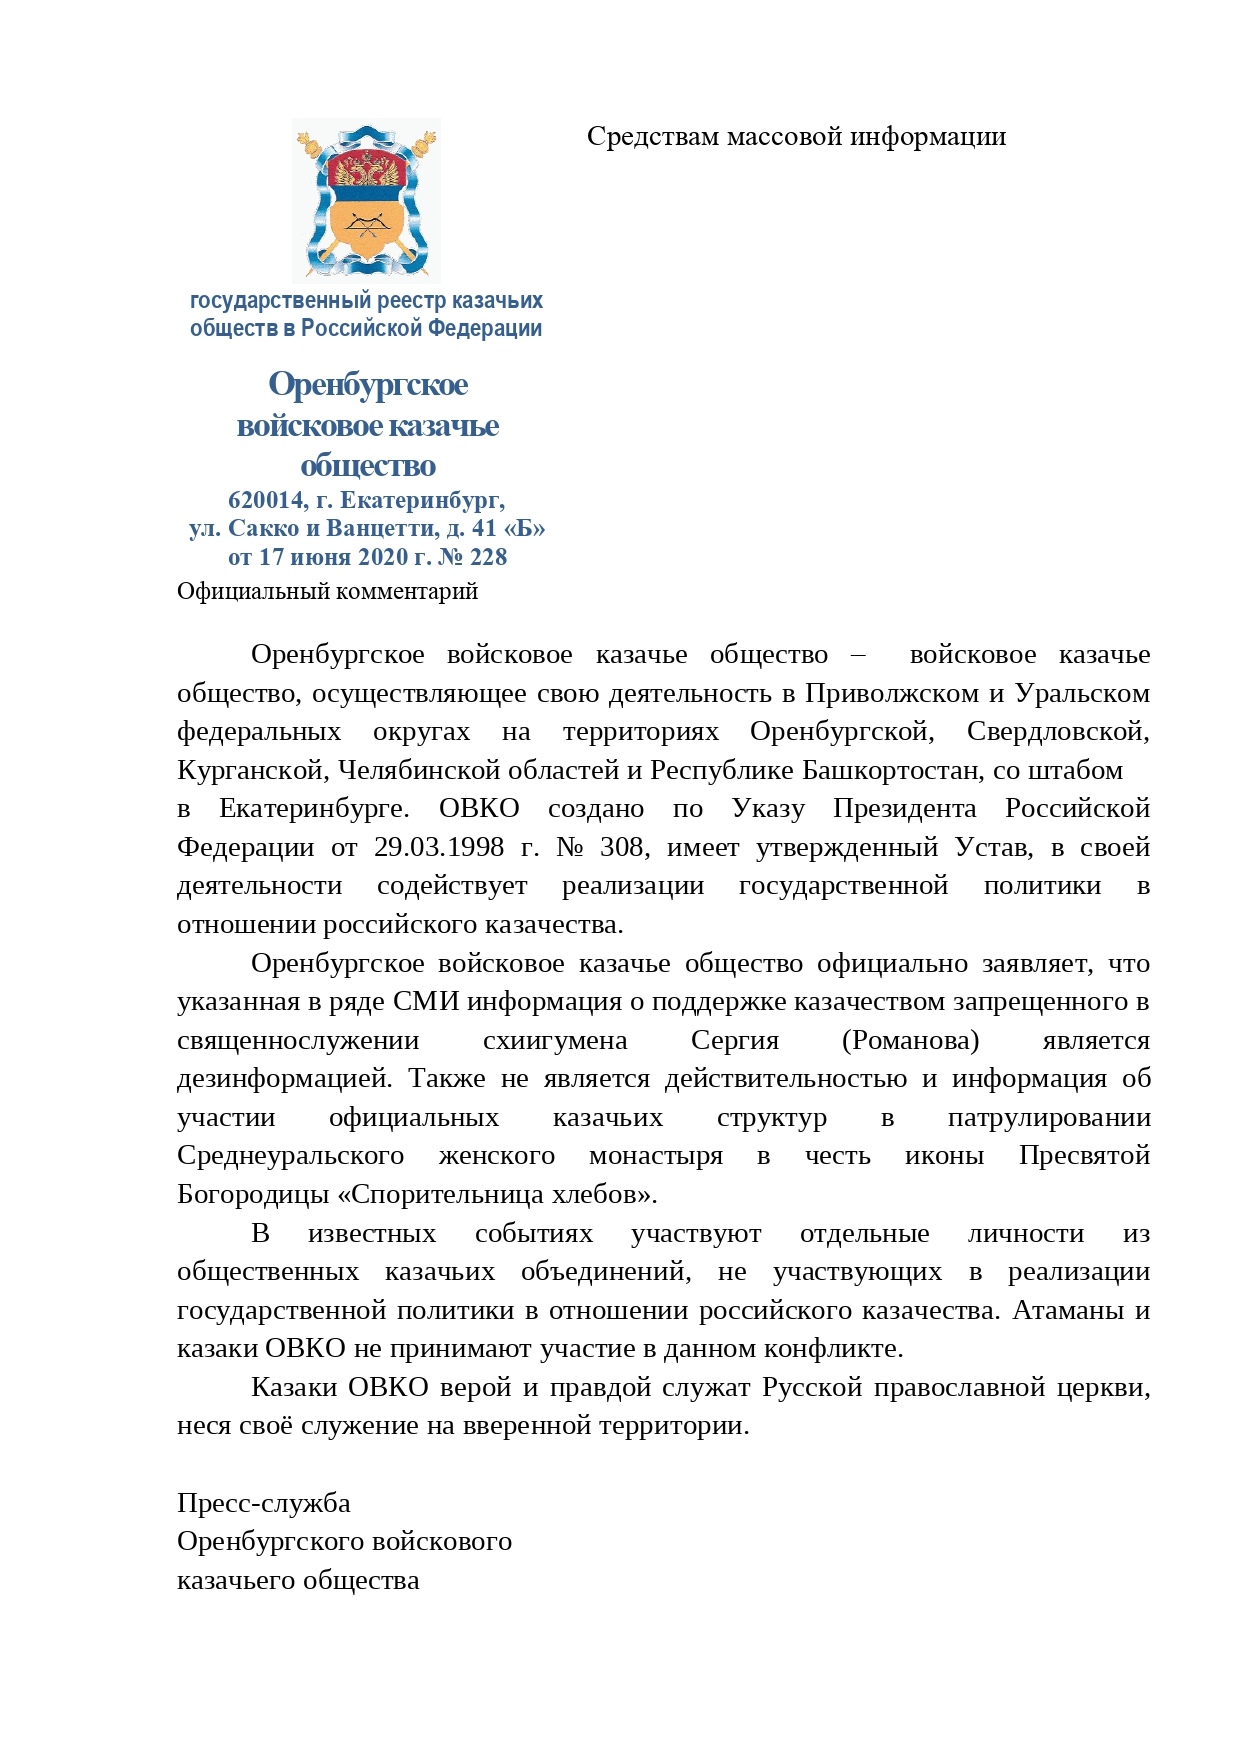 Официальный комментарий ОВКО на заявление о поддержке казачеством схиигумена Сергия (Романова)  ﻿﻿